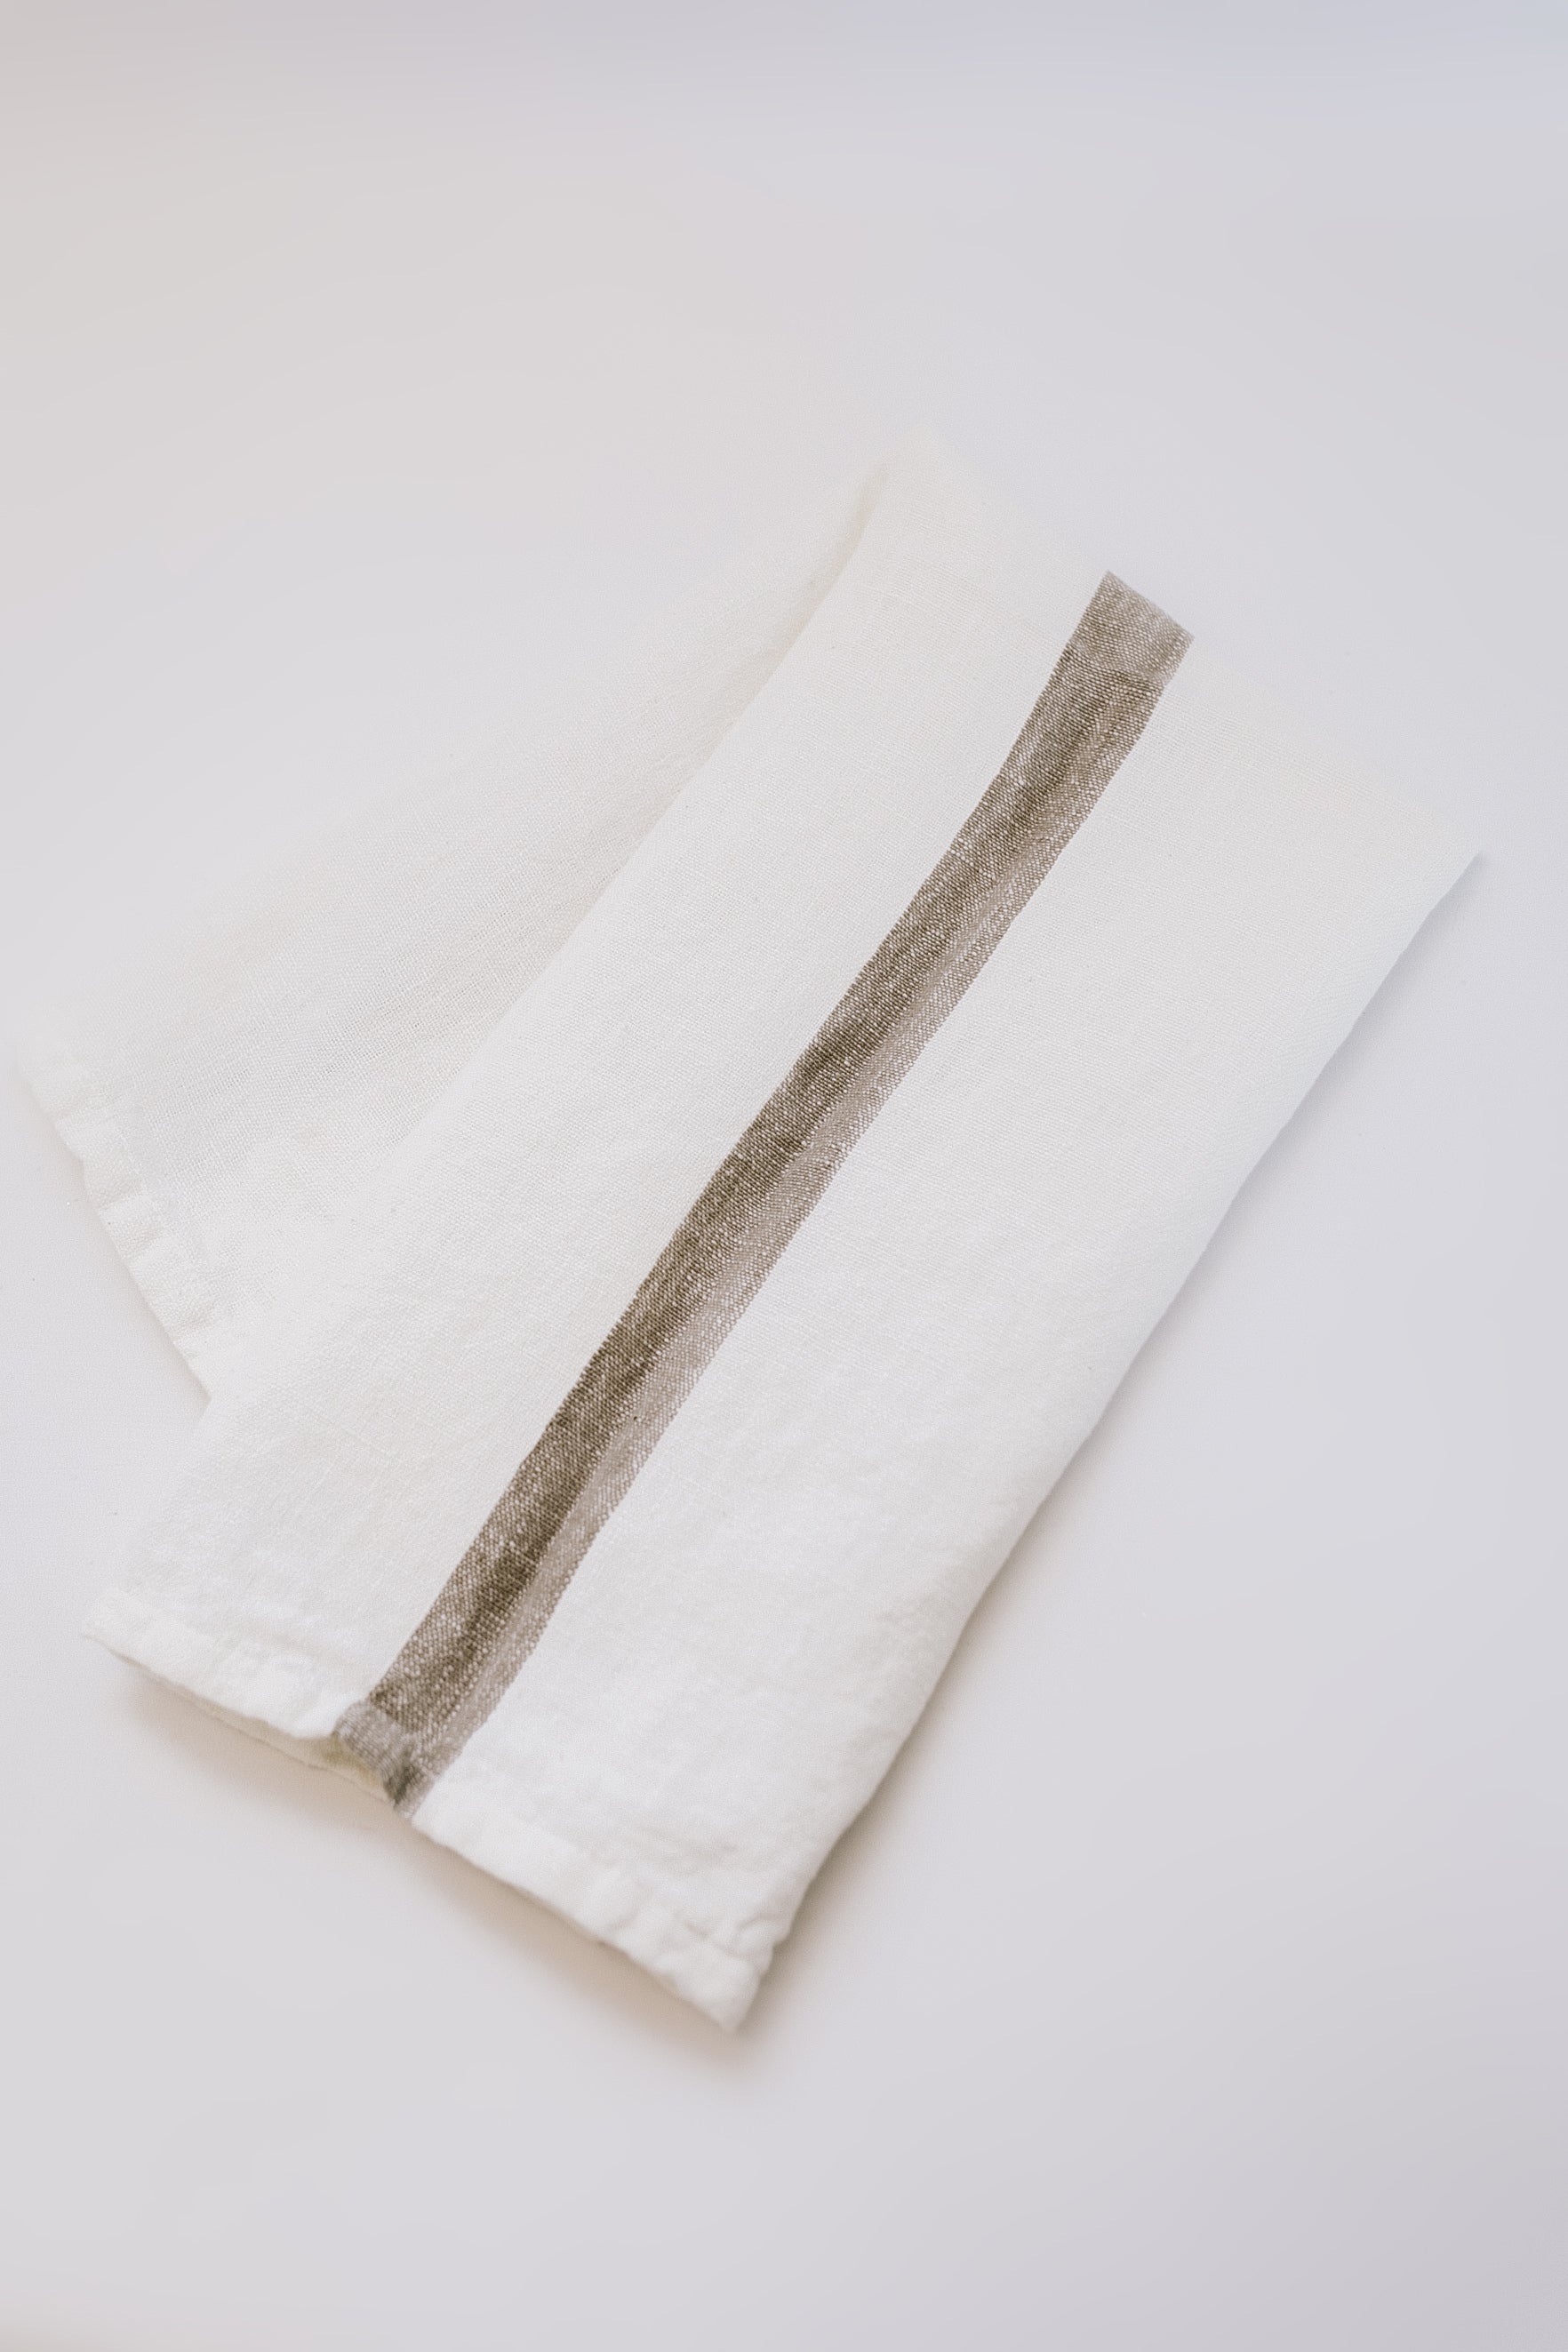 Loralei Striped Tea Towel - Beige